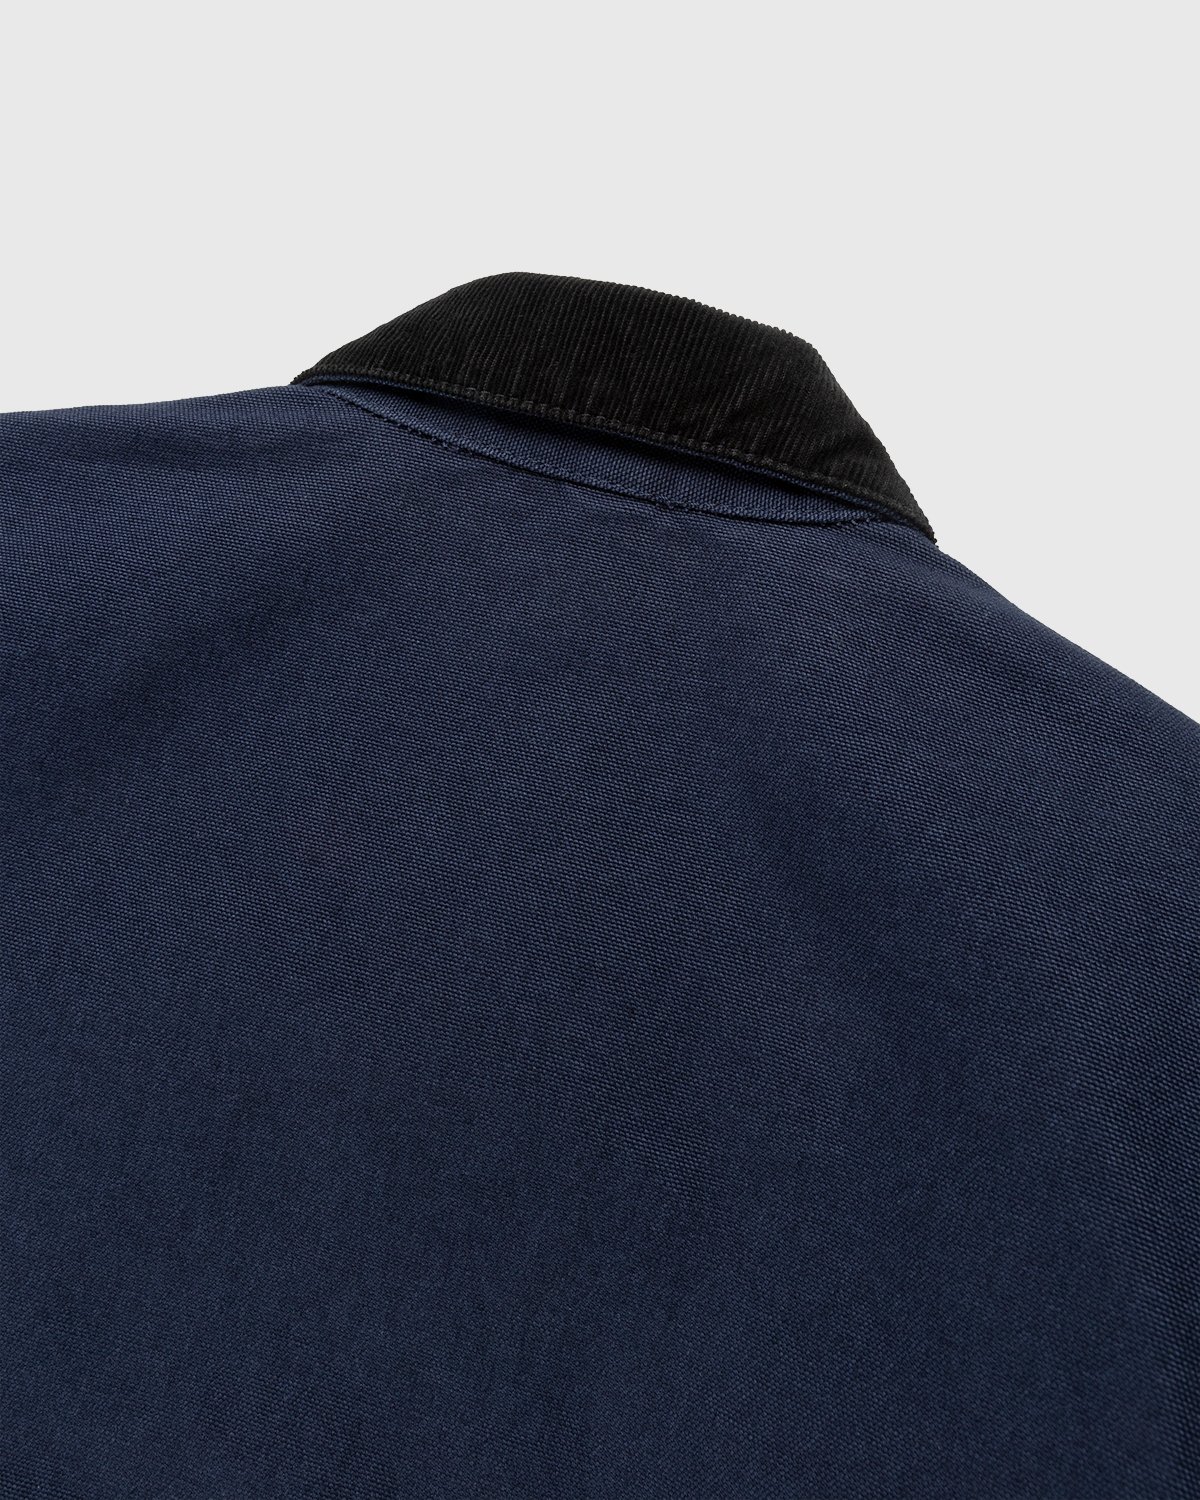 Carhartt WIP - Detroit Jacket Dark Navy Black Rinsed - Clothing - Blue - Image 4